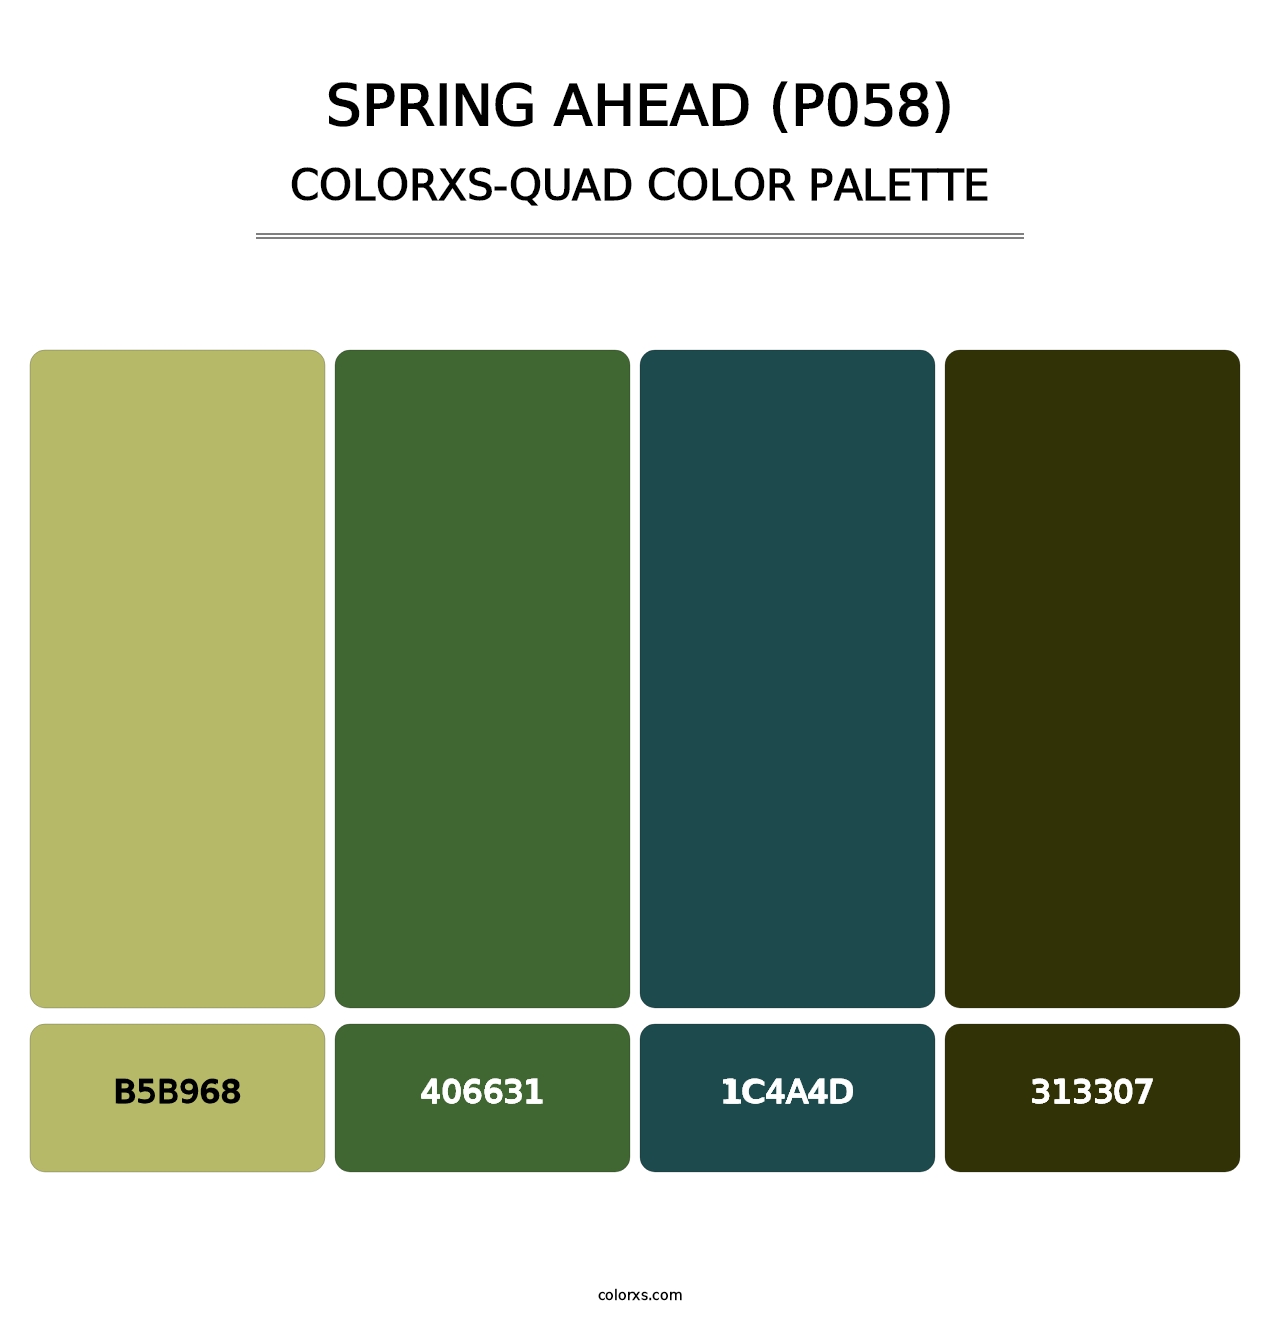 Spring Ahead (P058) - Colorxs Quad Palette